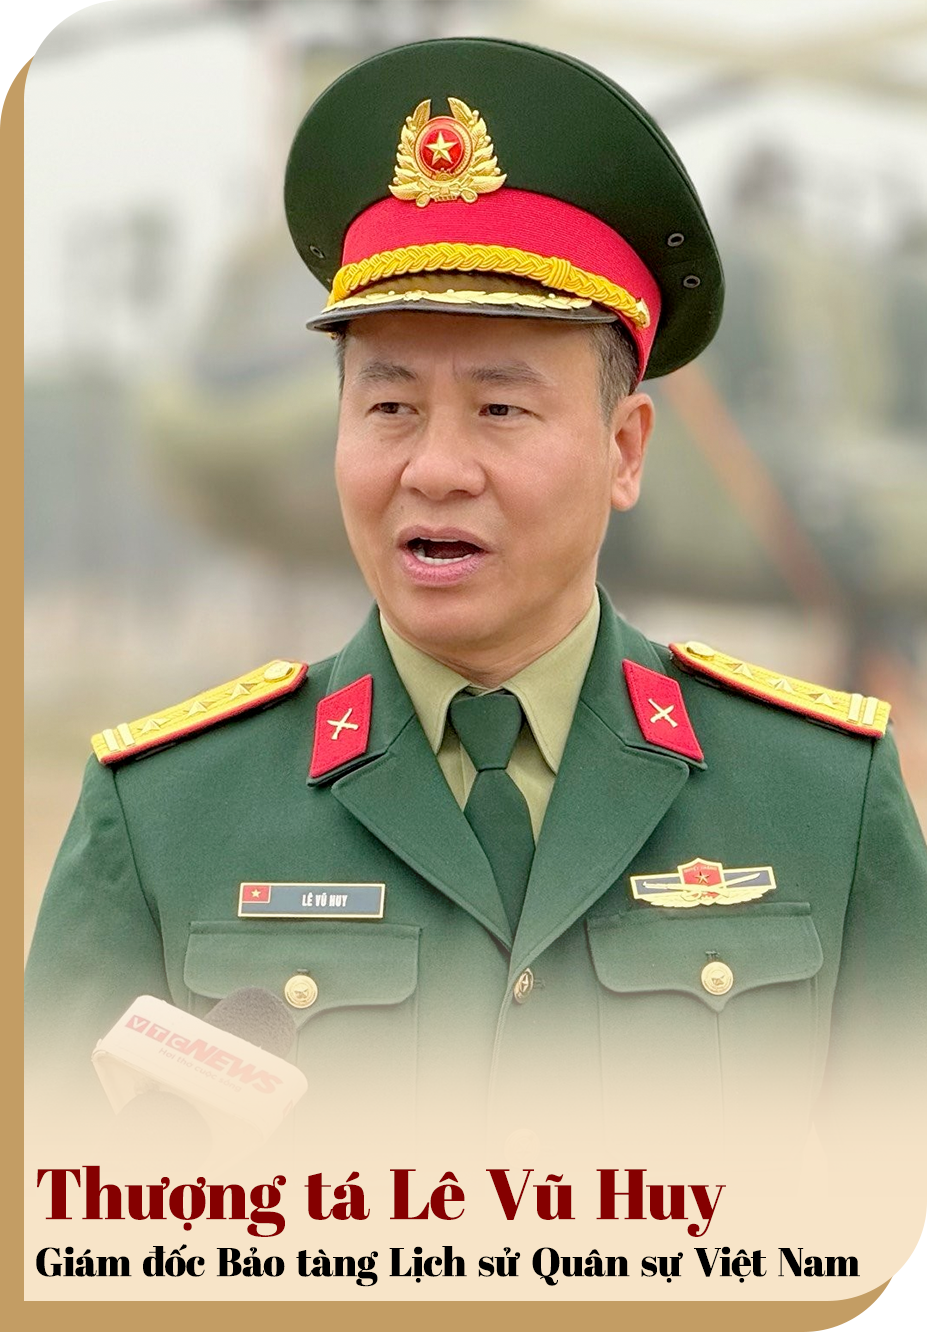 Điều đặc biệt về 4 bảo vật quốc gia trong bảo tàng quân sự lớn nhất Việt Nam - 8